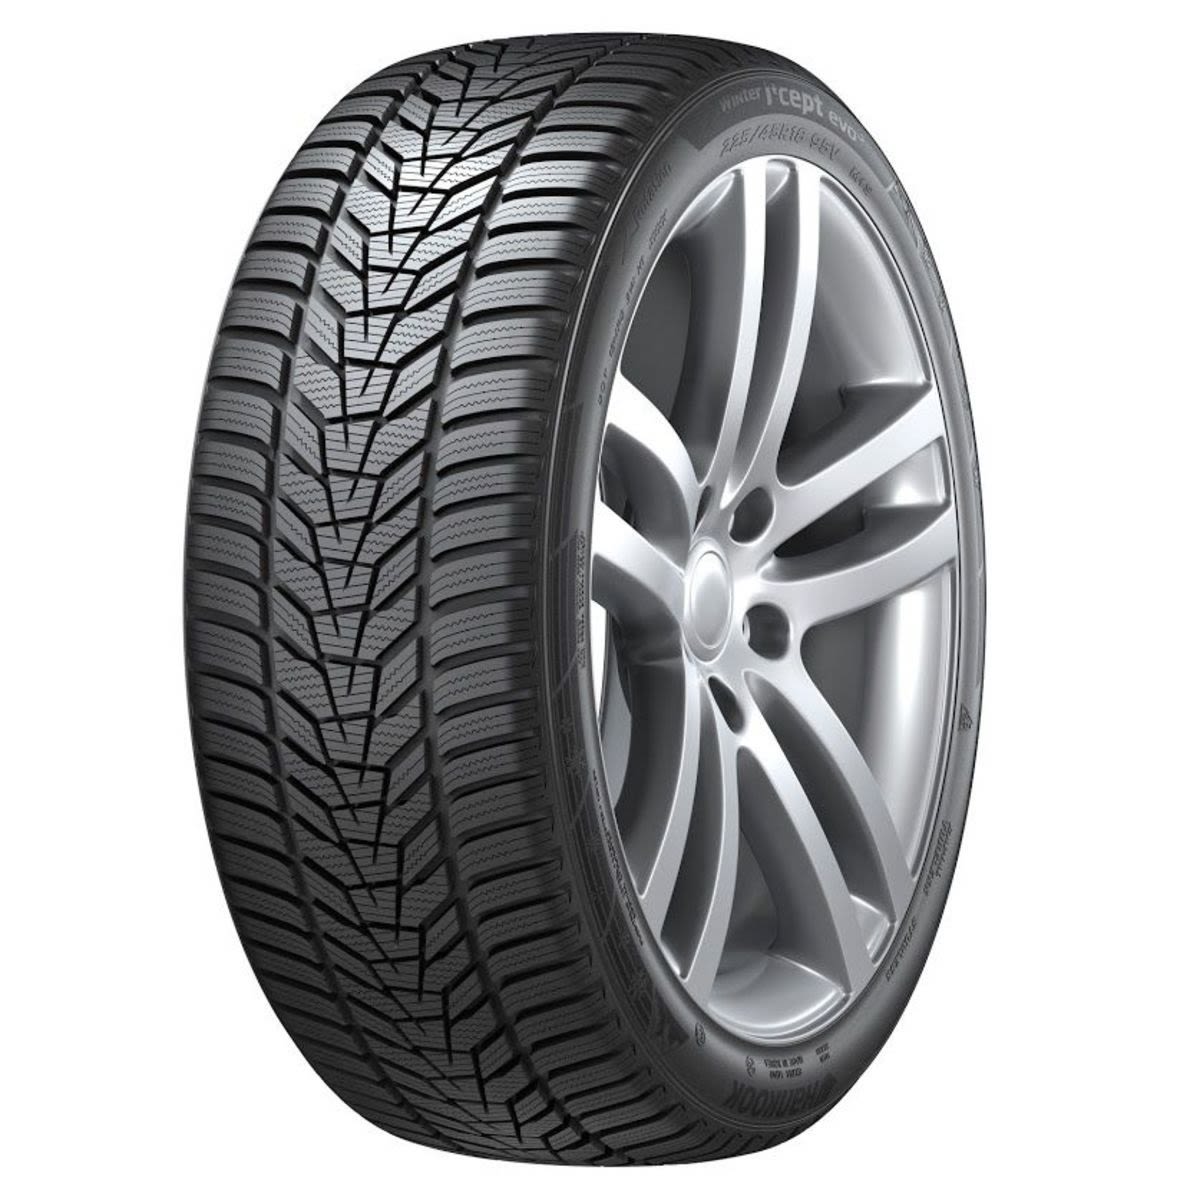 Neumáticos de invierno HANKOOK Winter i*cept evo3 W330 265/35R20 XL 99W